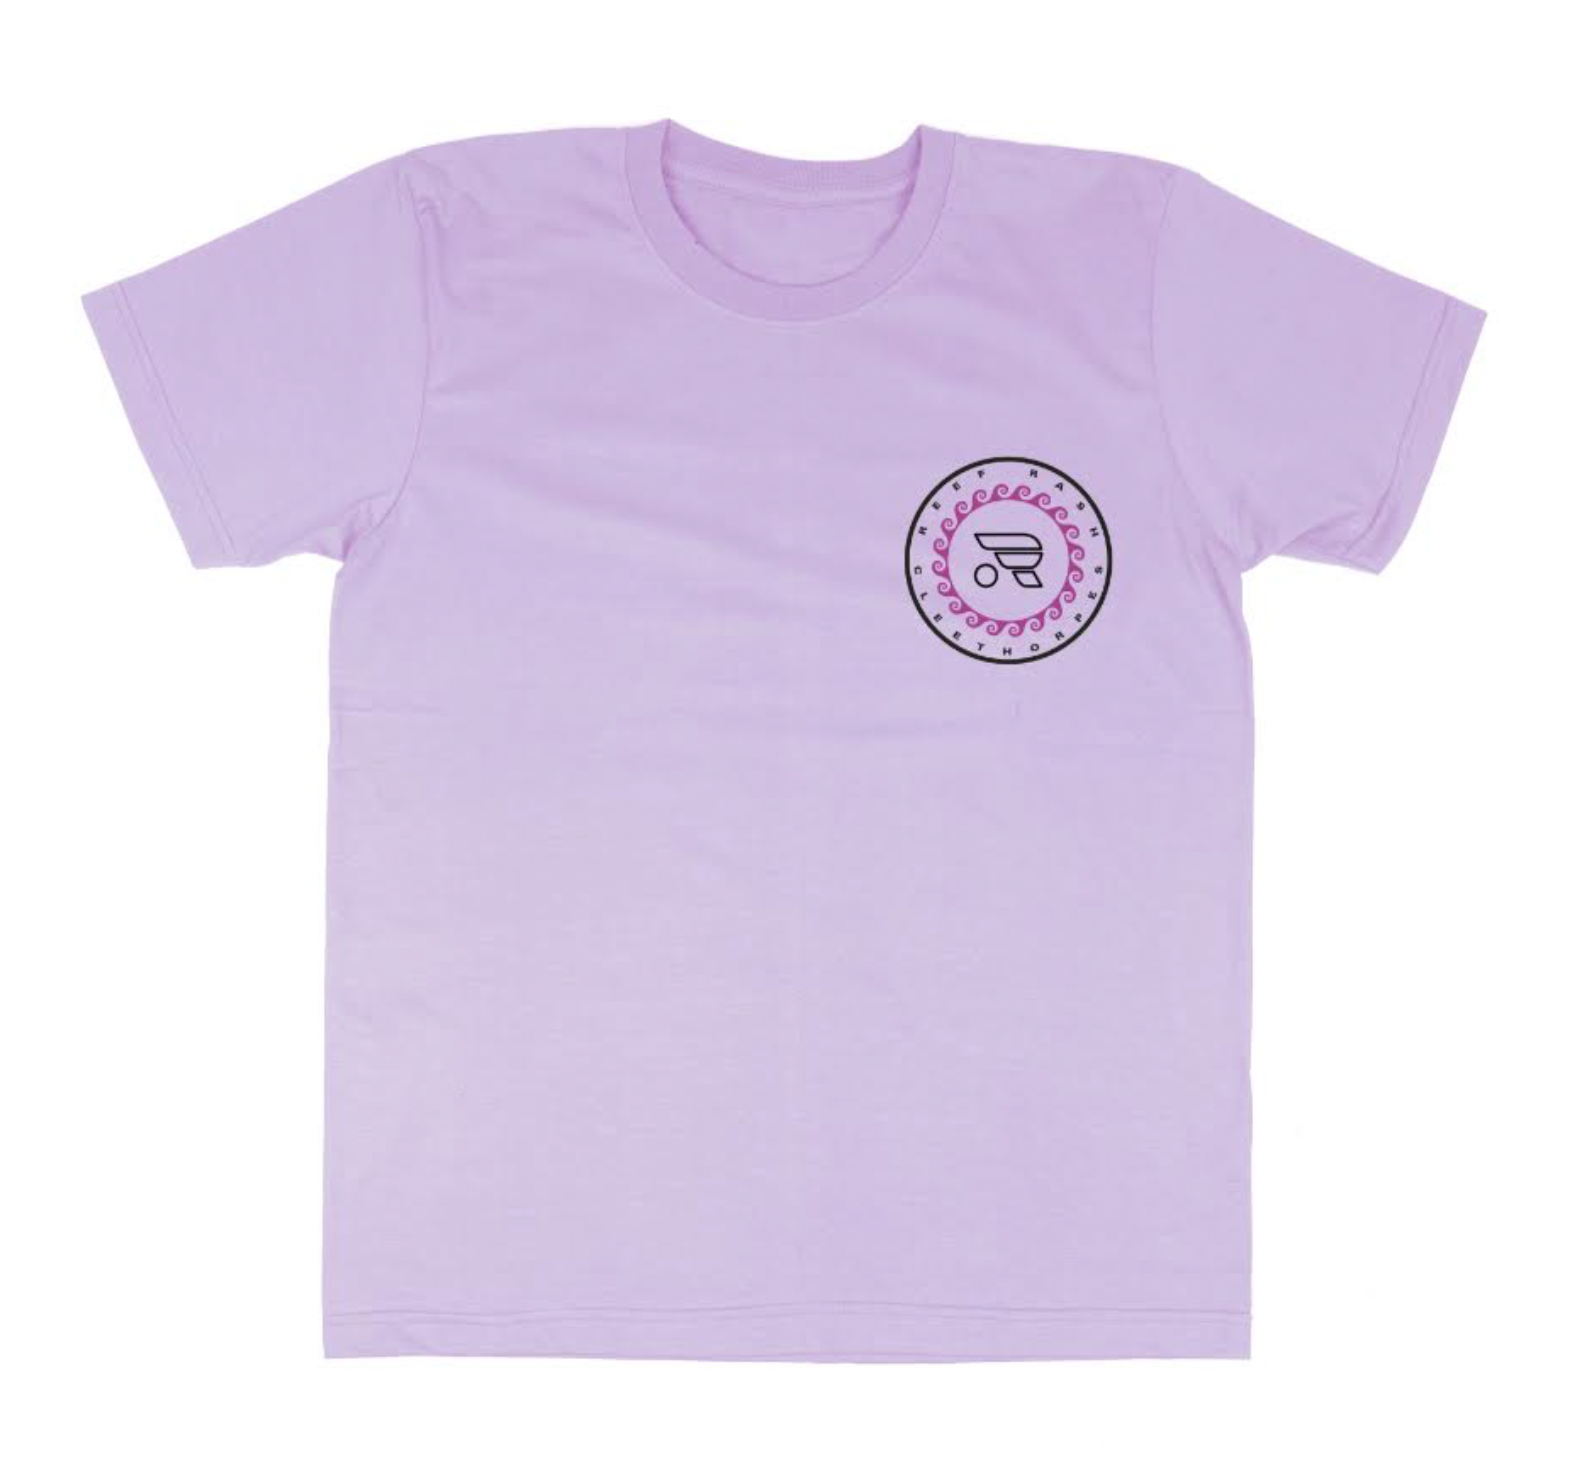 CLEETHORPES   StarFish T-shirt - Lilac -